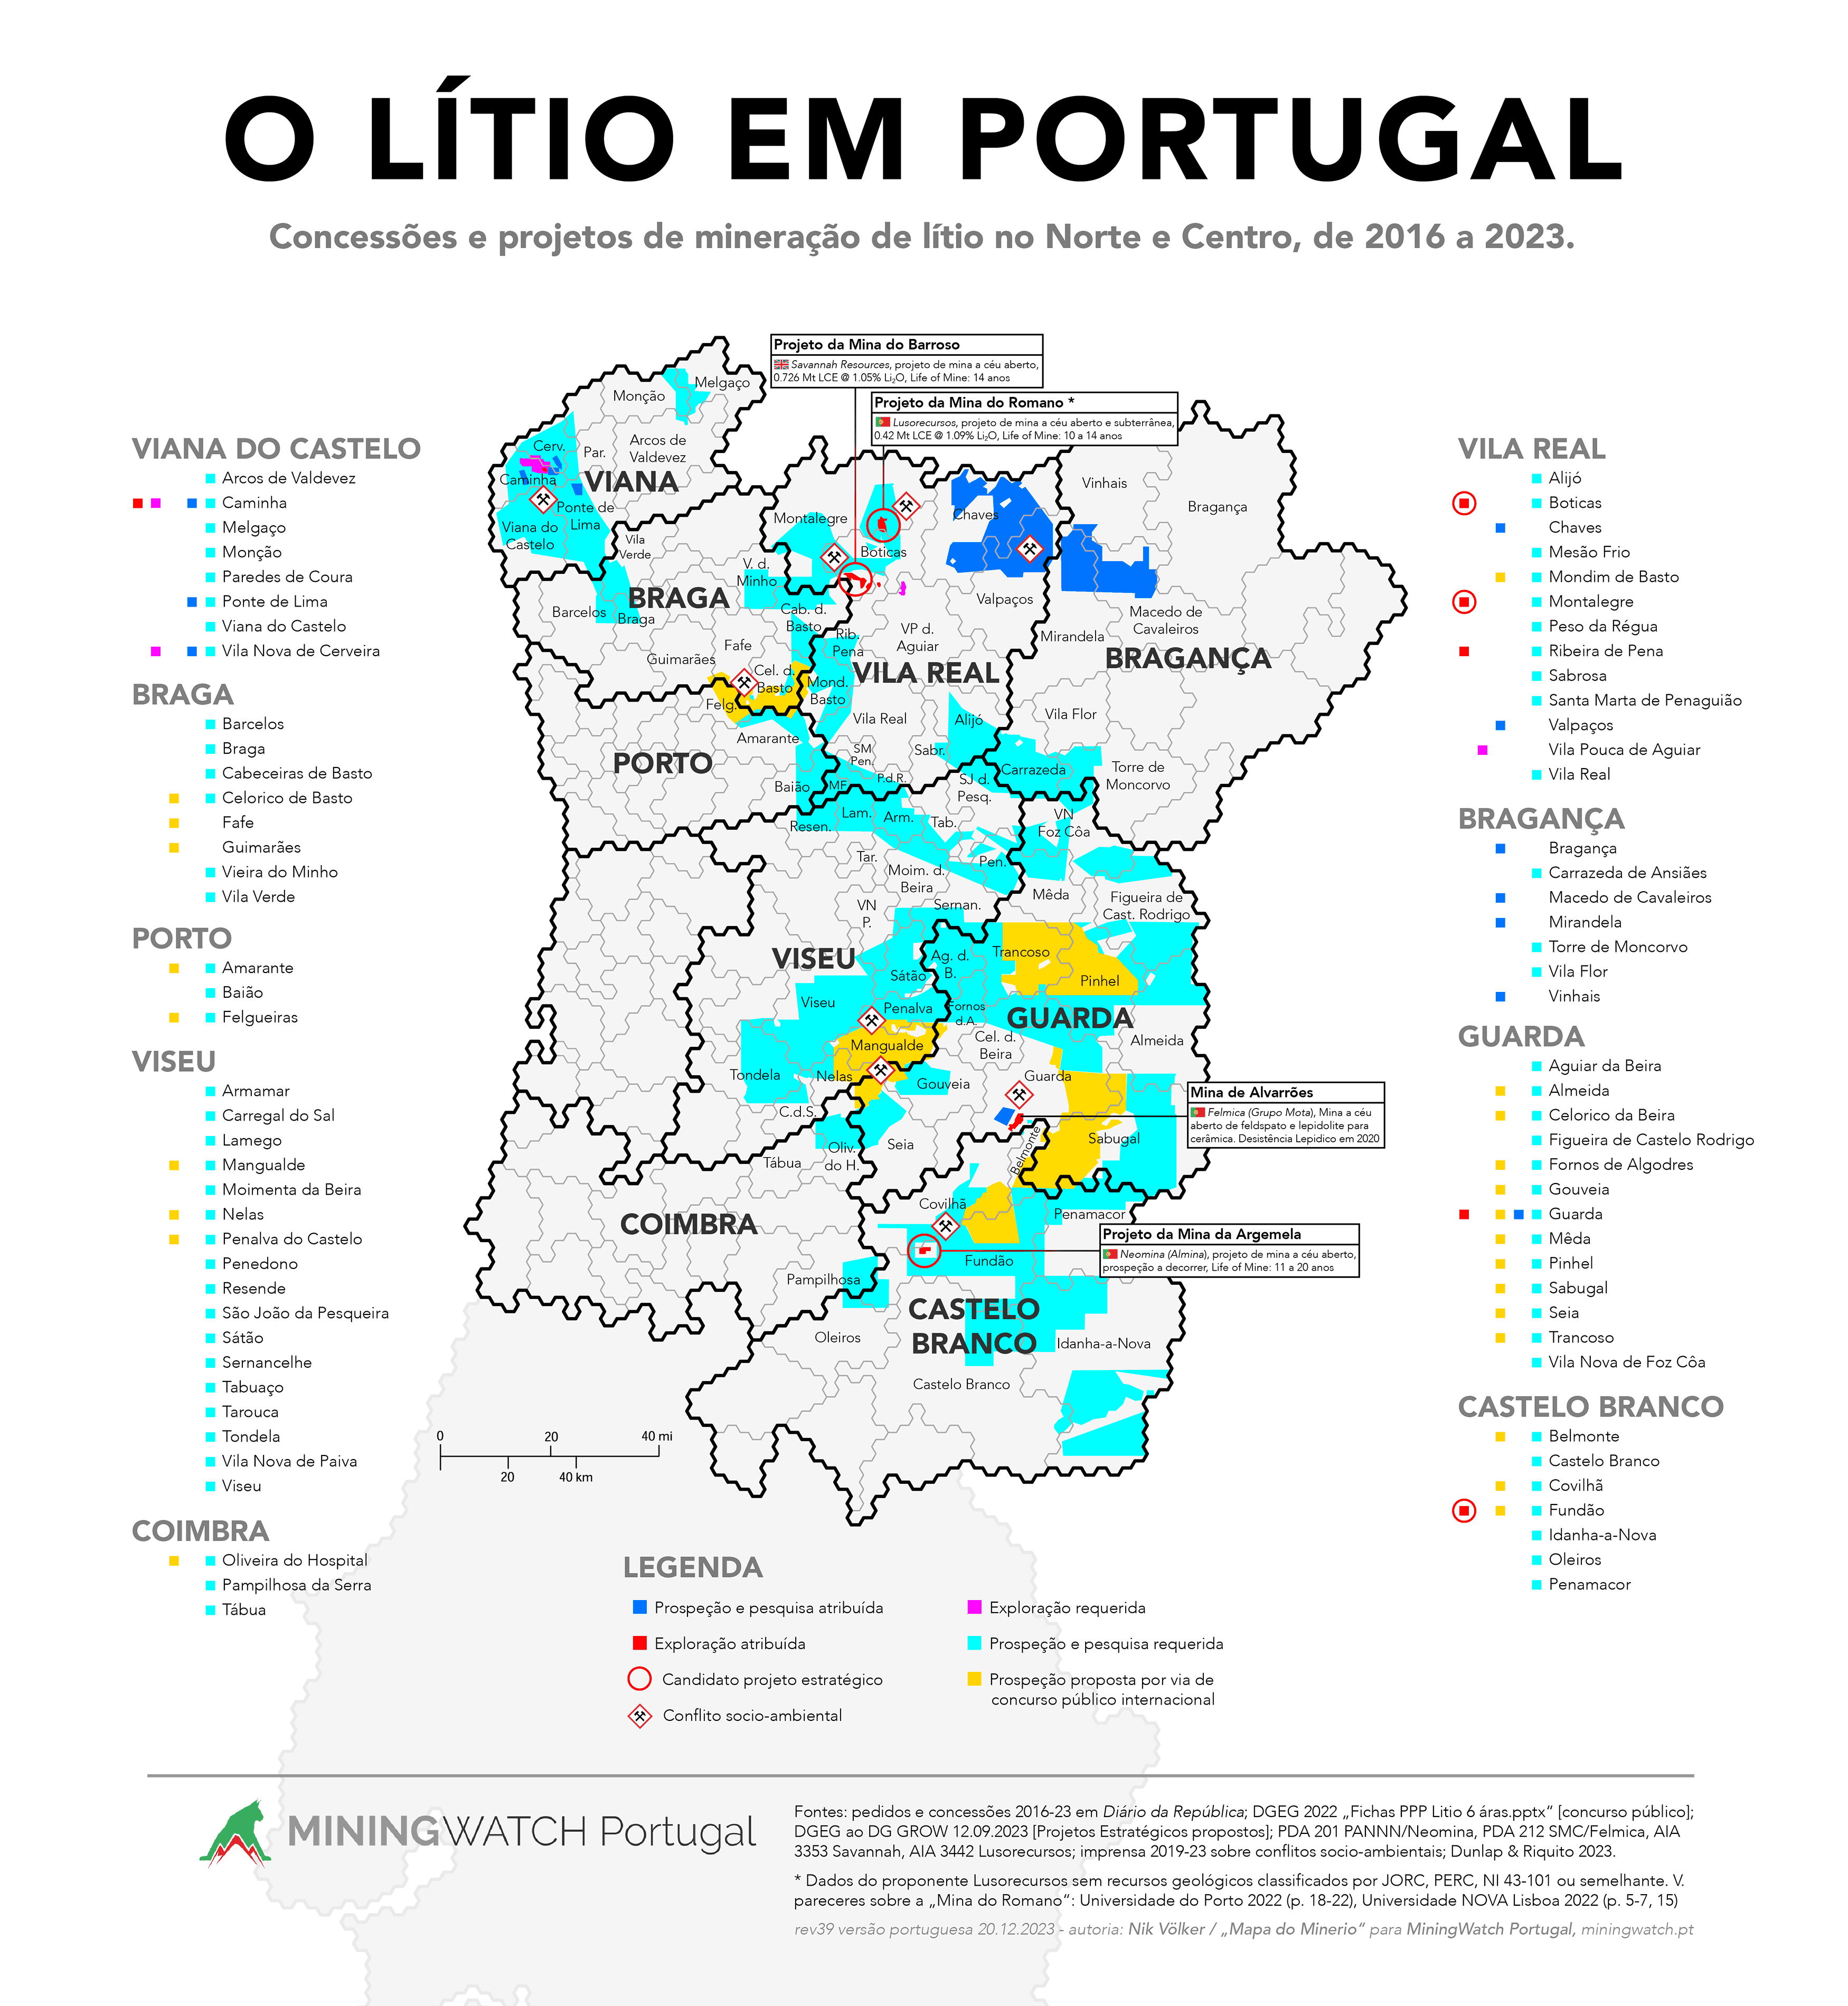 o_litio_projetos_concessoes_no_norte_centro_portugal_concelhos_municipios_distritos-rev39-2023-portugues-64c